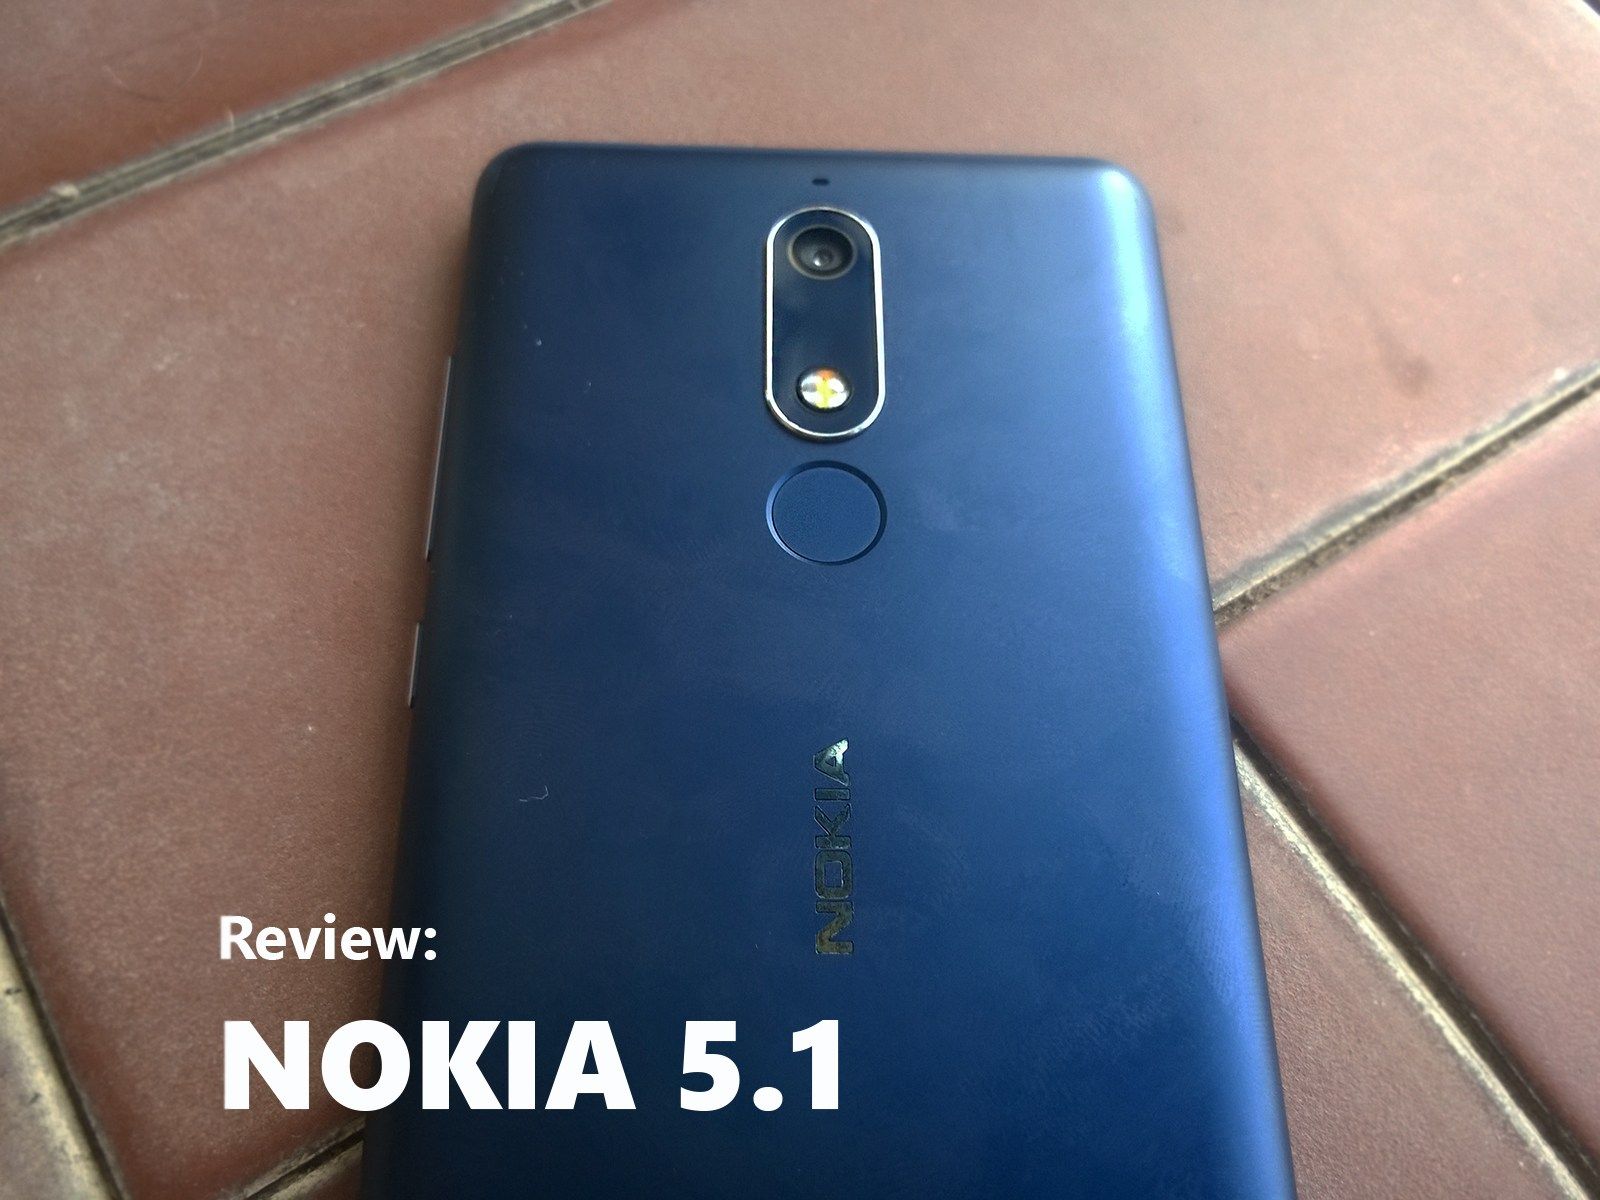 Review: Nokia 5.1